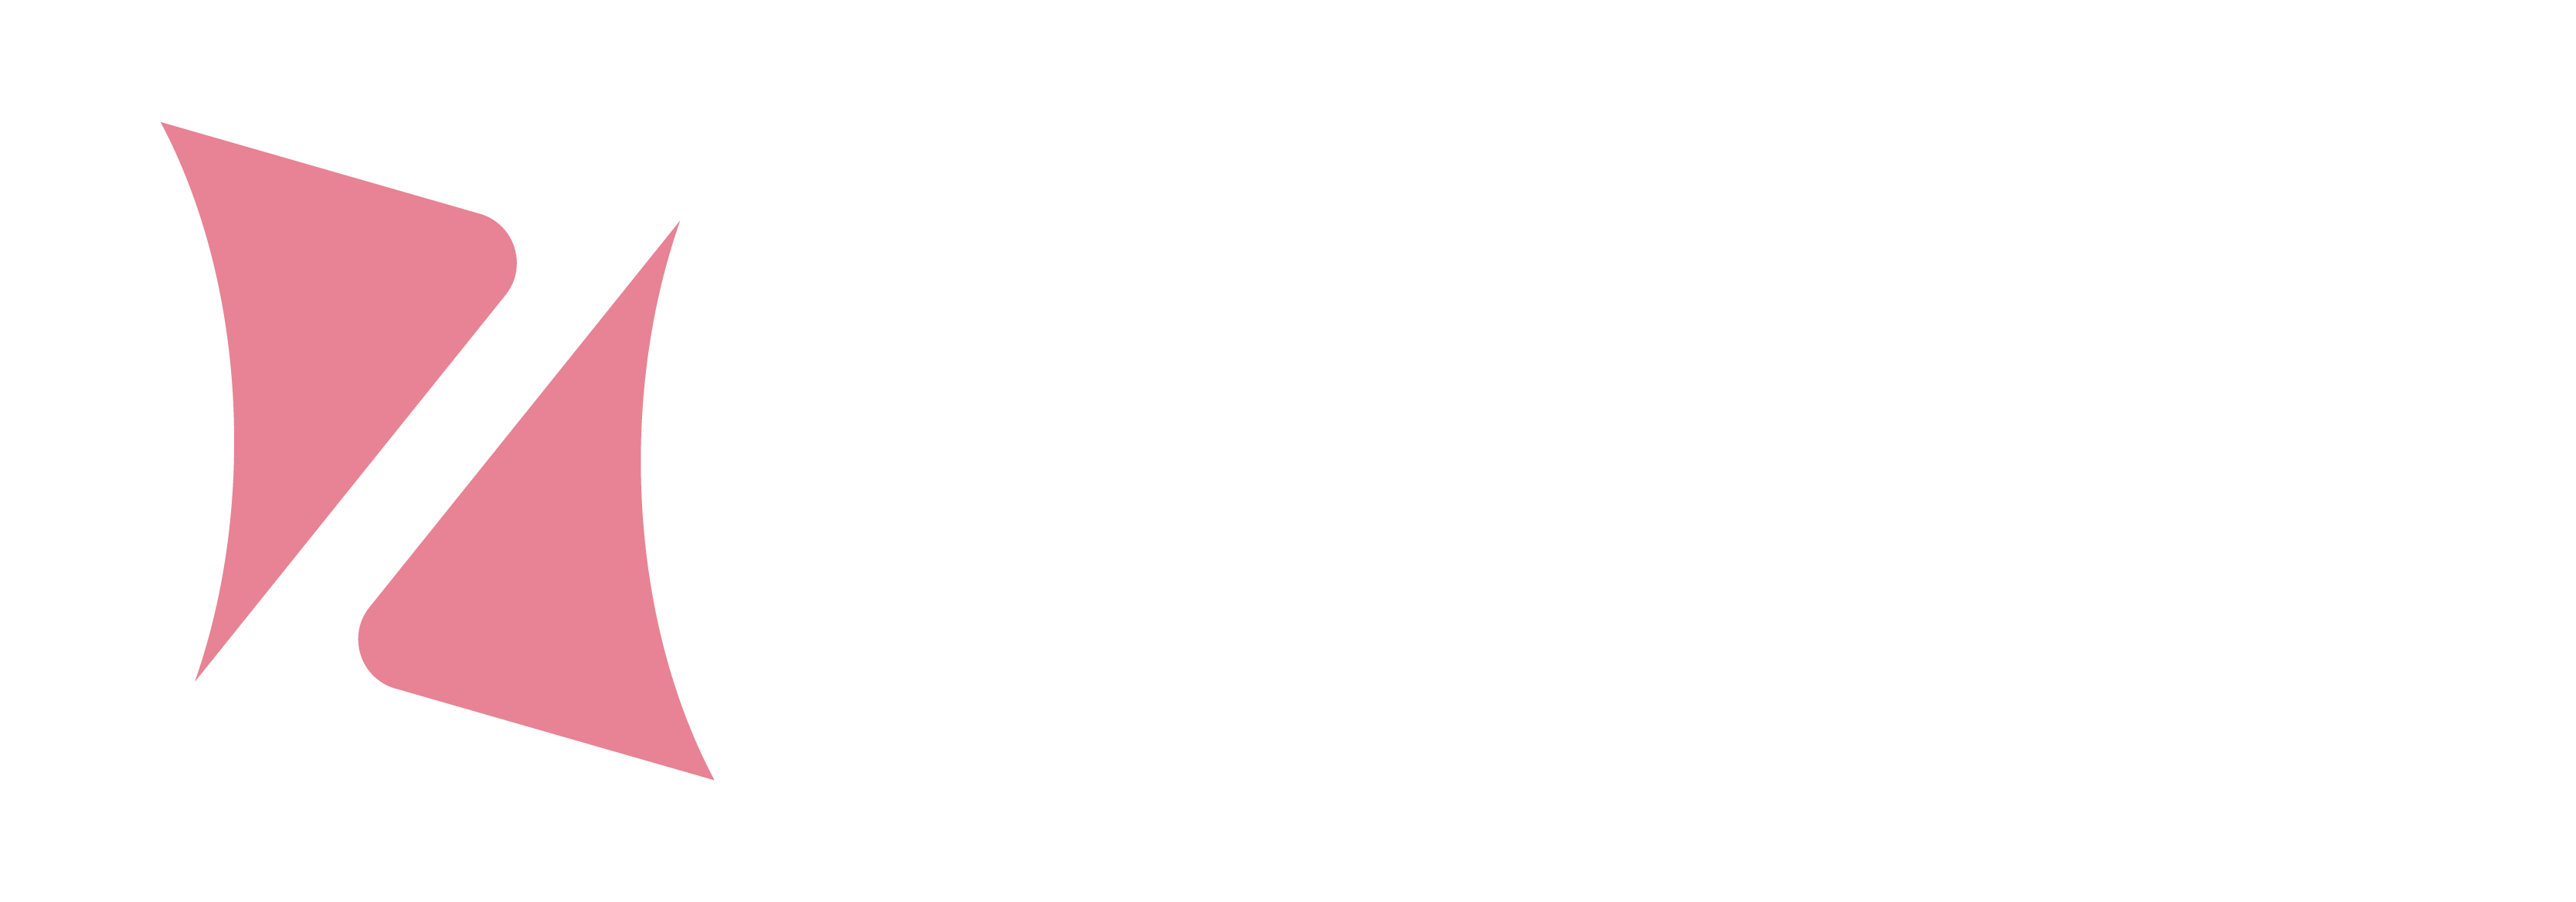 ZYGO-logo_white